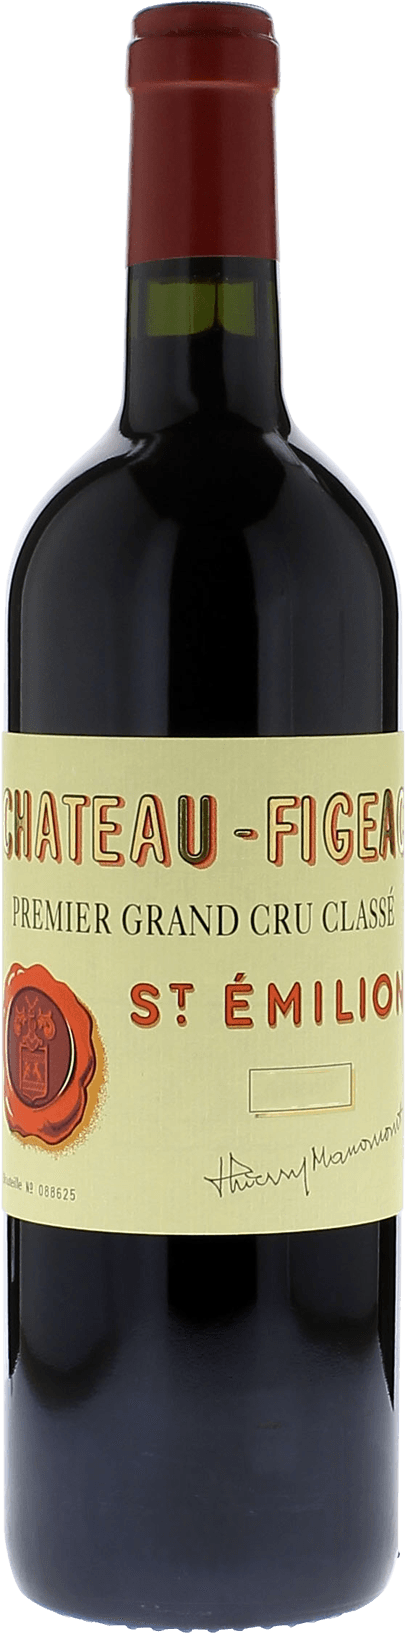 Figeac 2002 1er Grand cru class Saint-Emilion, Bordeaux rouge